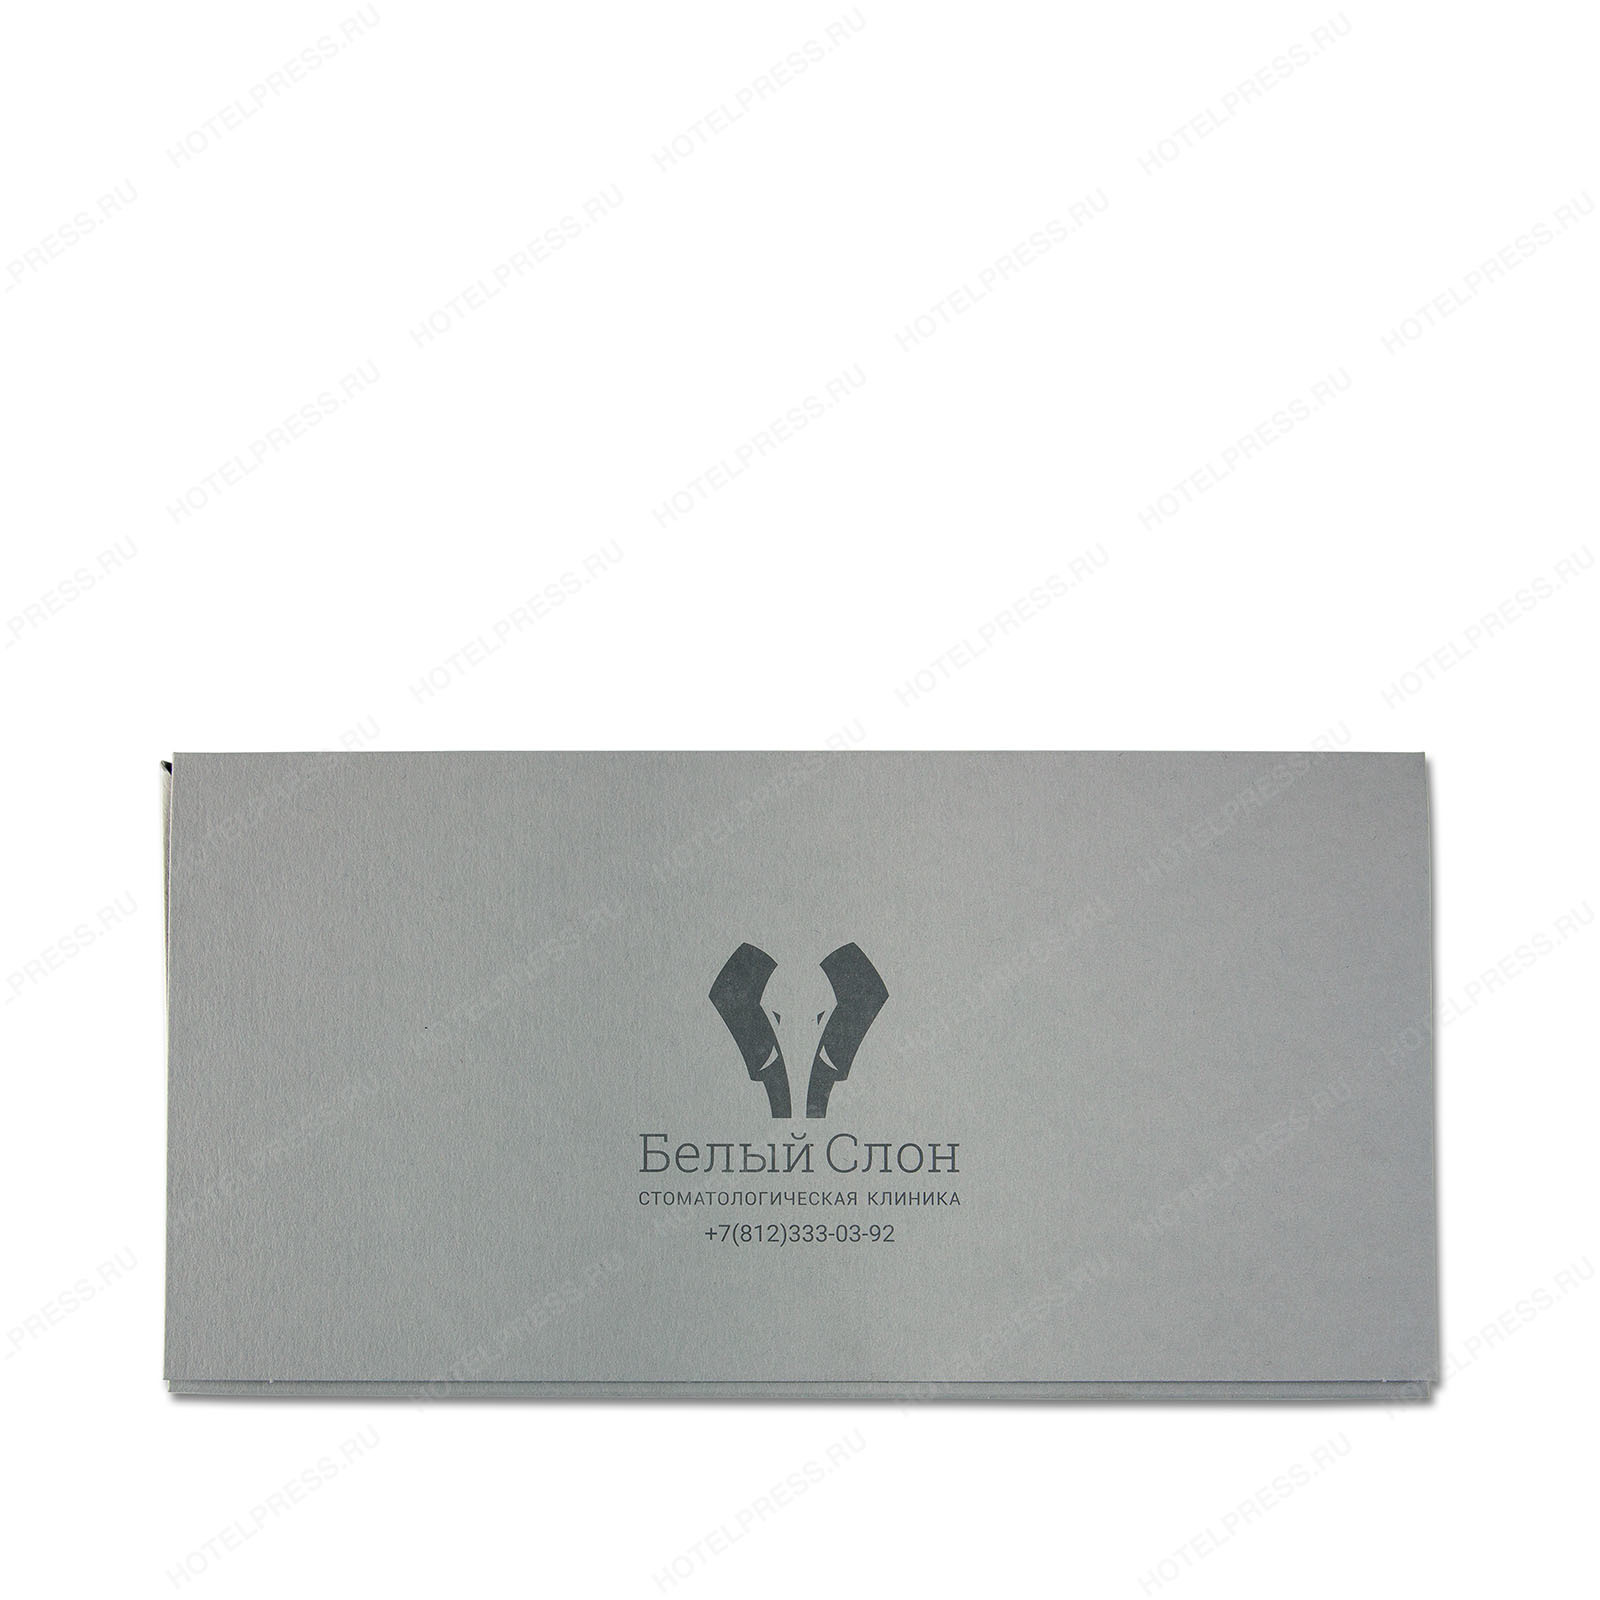 Объёмный конверт для вложения из дизайнерской бумаги для стоматологии